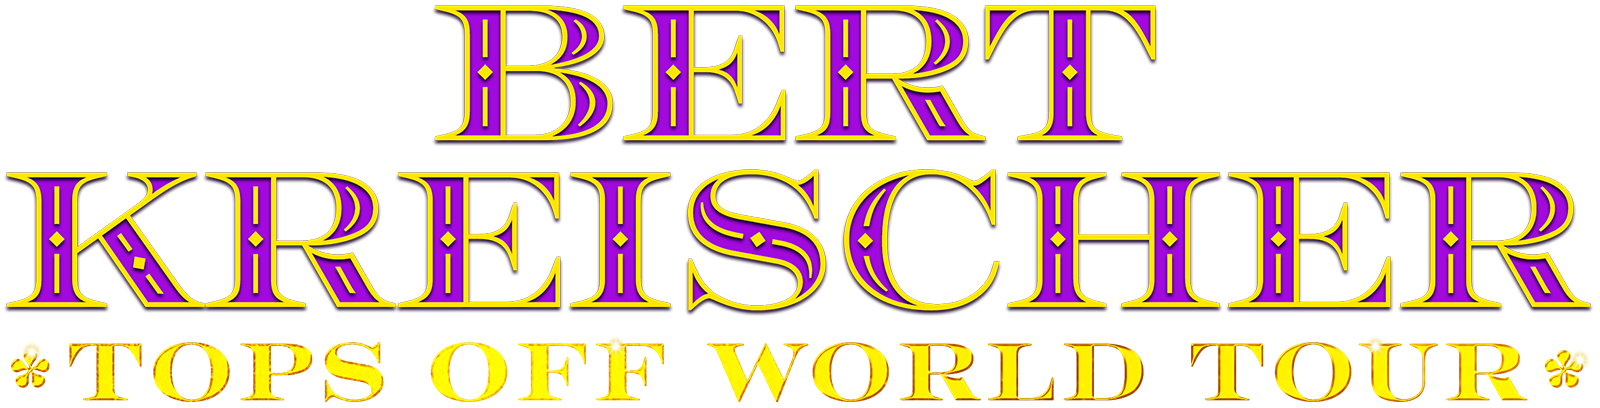 Bert Kreischer Tops Off World Tour logo